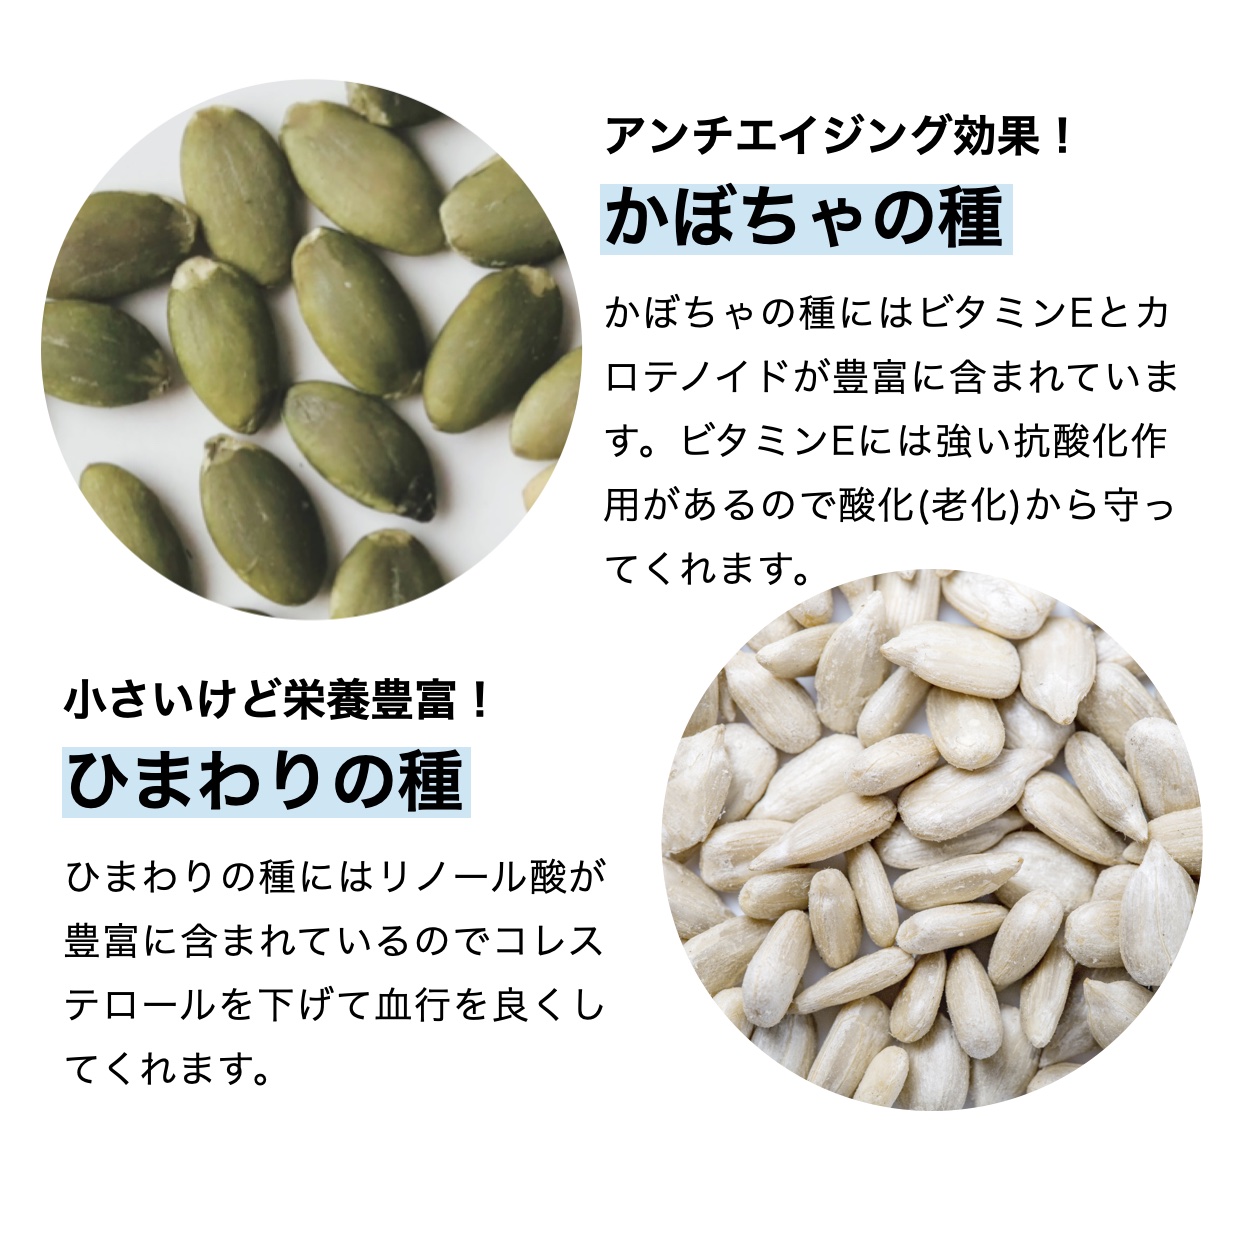 おきかえナッツ「たんぱくしっつ」に入っているカボチャの種とひまわりの種の栄養価を説明しているイメージ